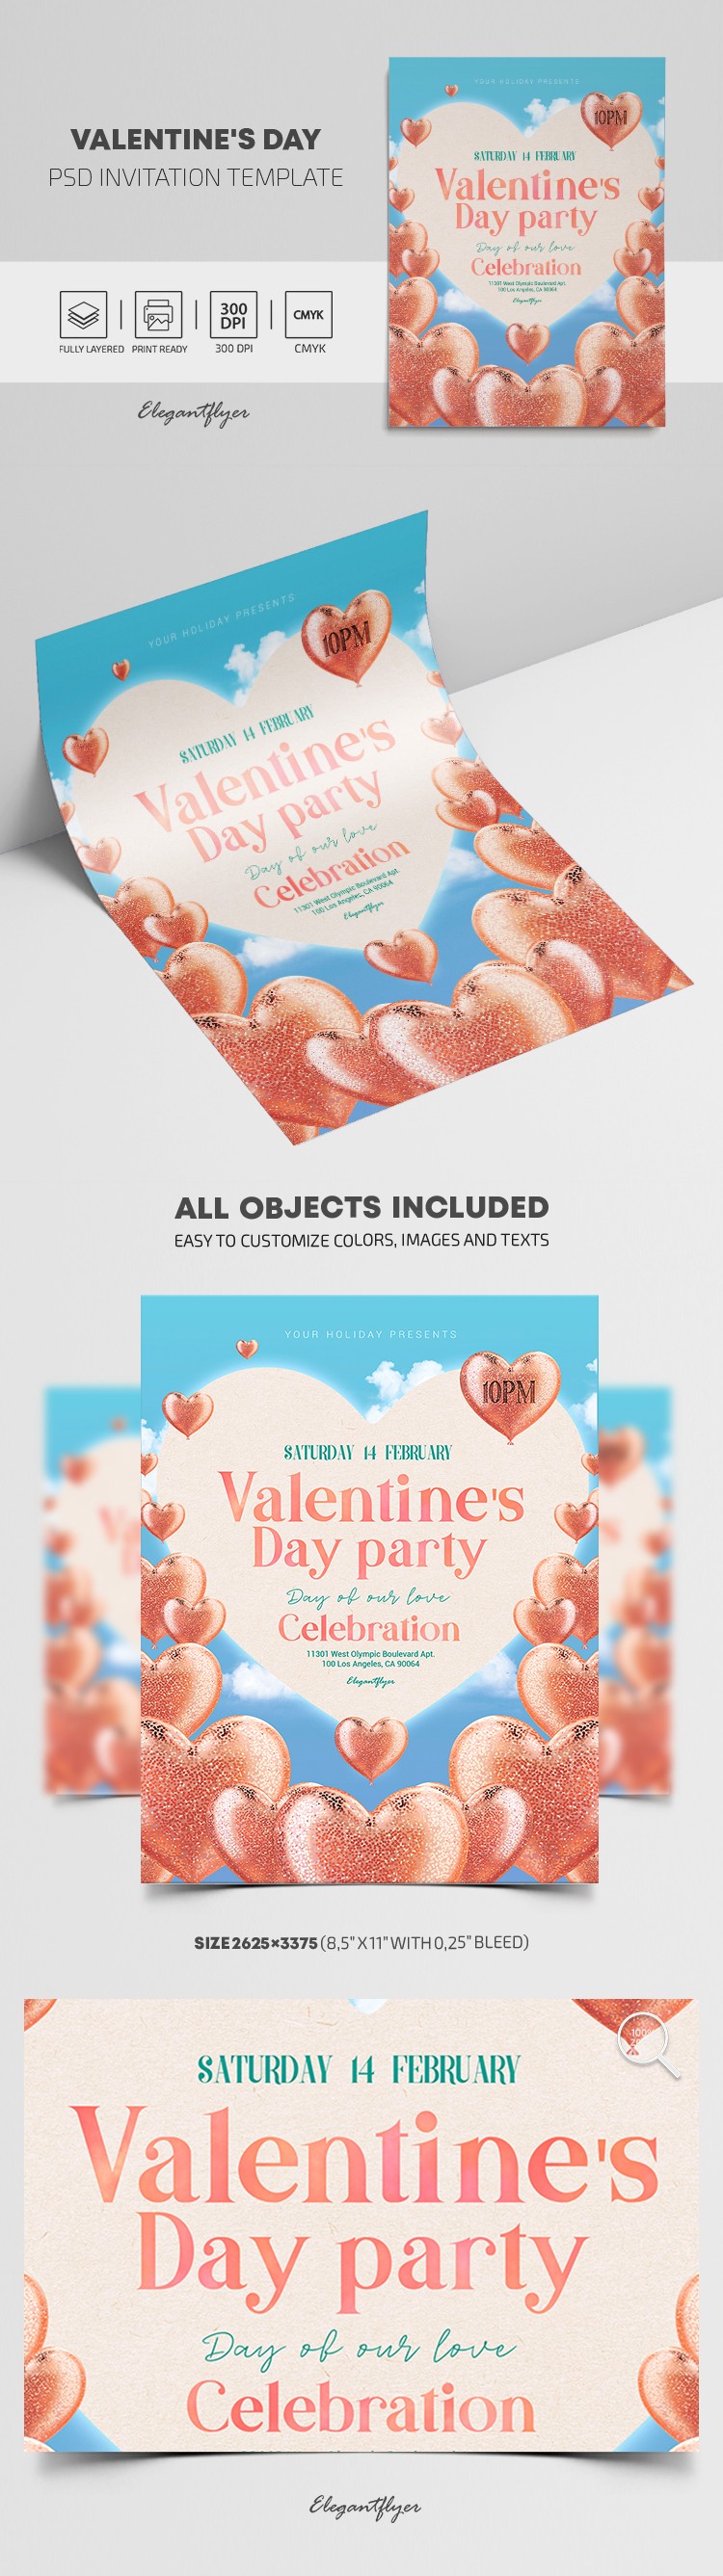 Convite para o Dia dos Namorados by ElegantFlyer